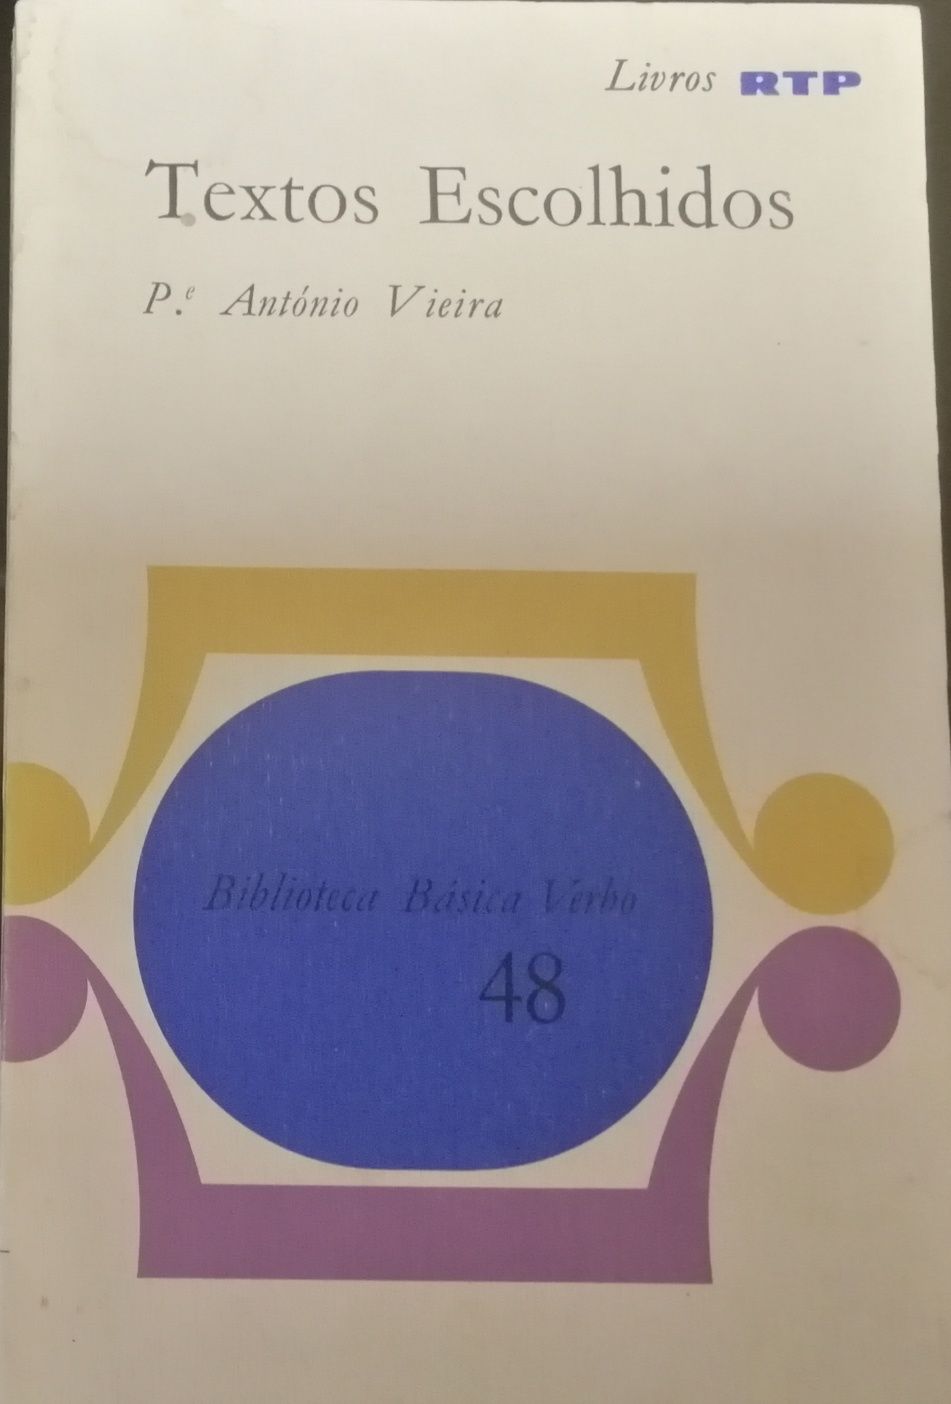 Livro "Textos Escolhidos", Padre António Vieira